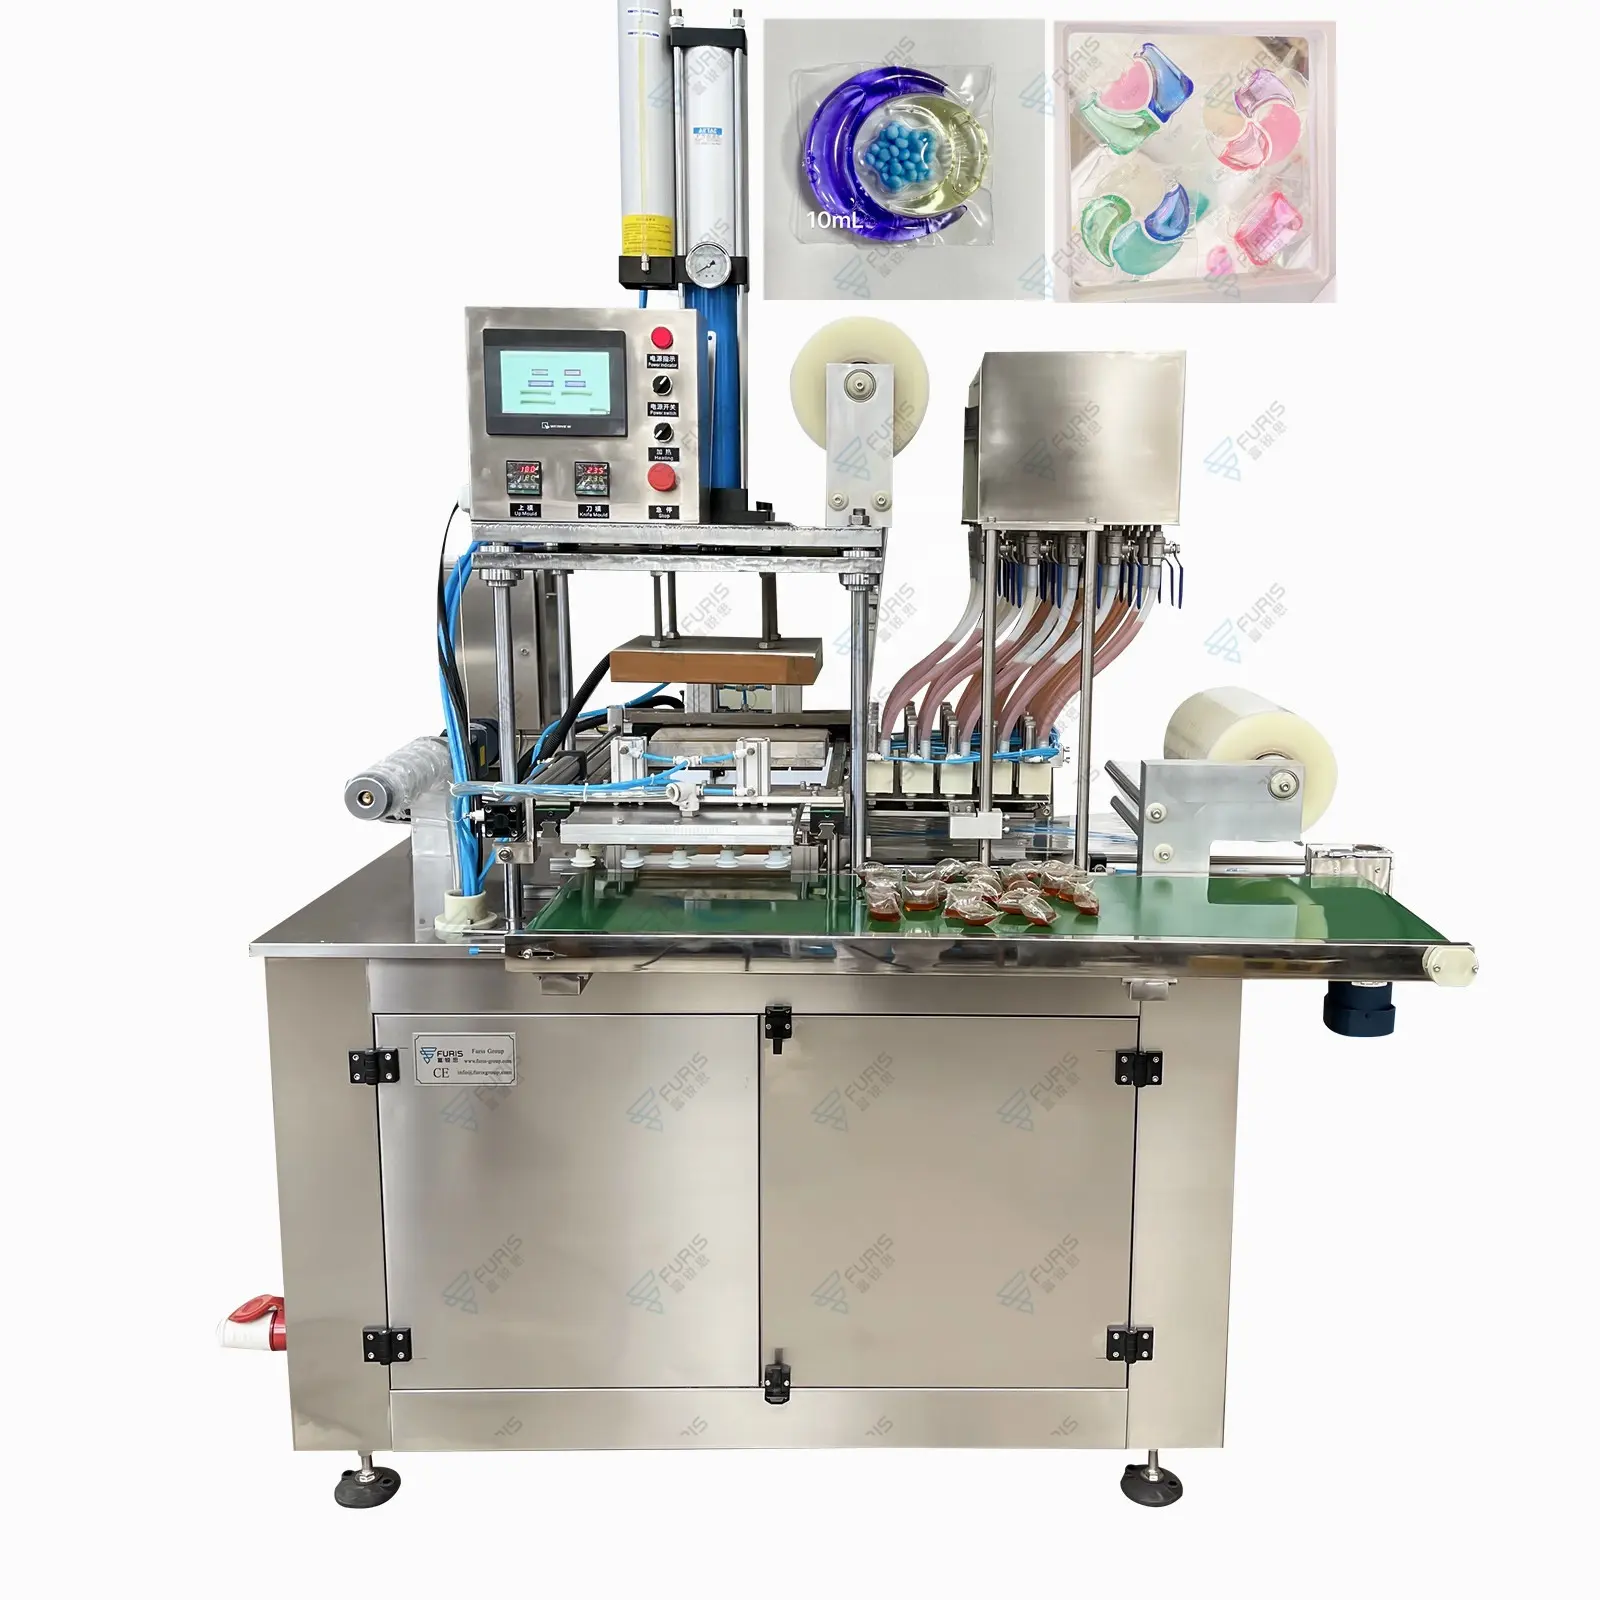 Çin fabrika kaynağı çözünür Film renkleri yıkama sıvısı deterjan dolgu paketi toz Pod makinesi fiyat tedarikçisi yapmak